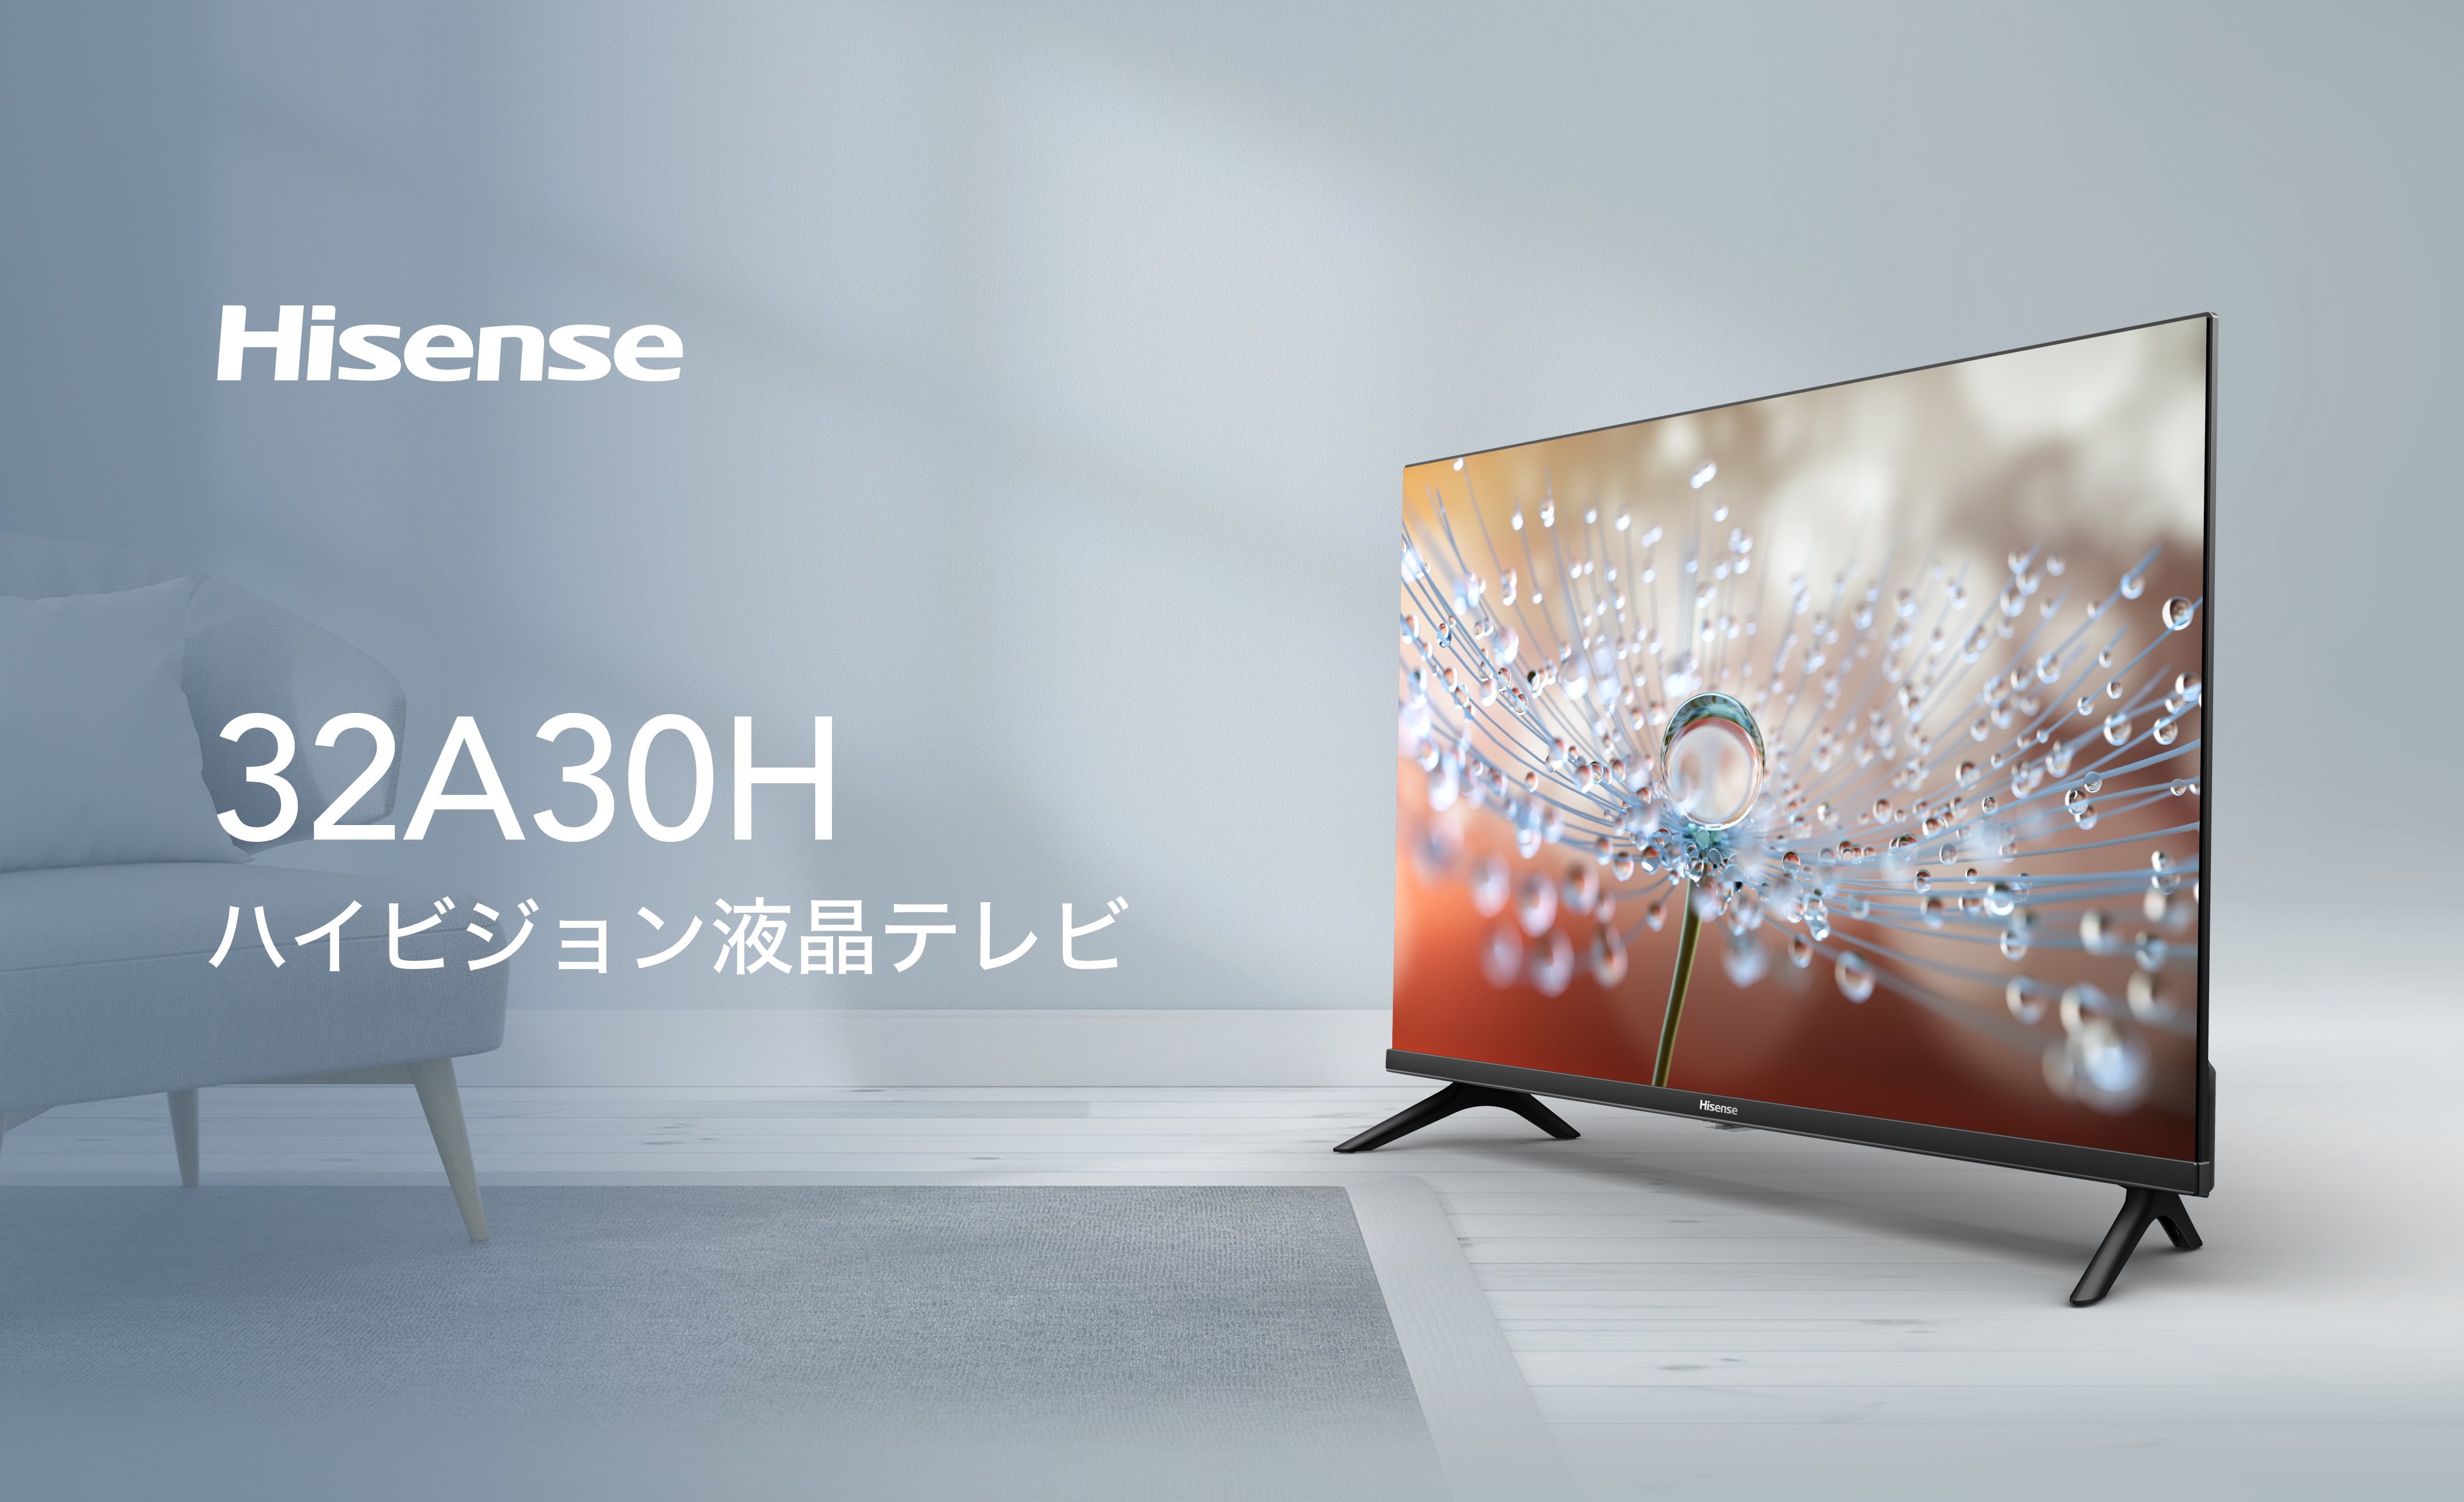 ハイビジョン液晶テレビ「32A30H」を 2022年11月上旬より発売